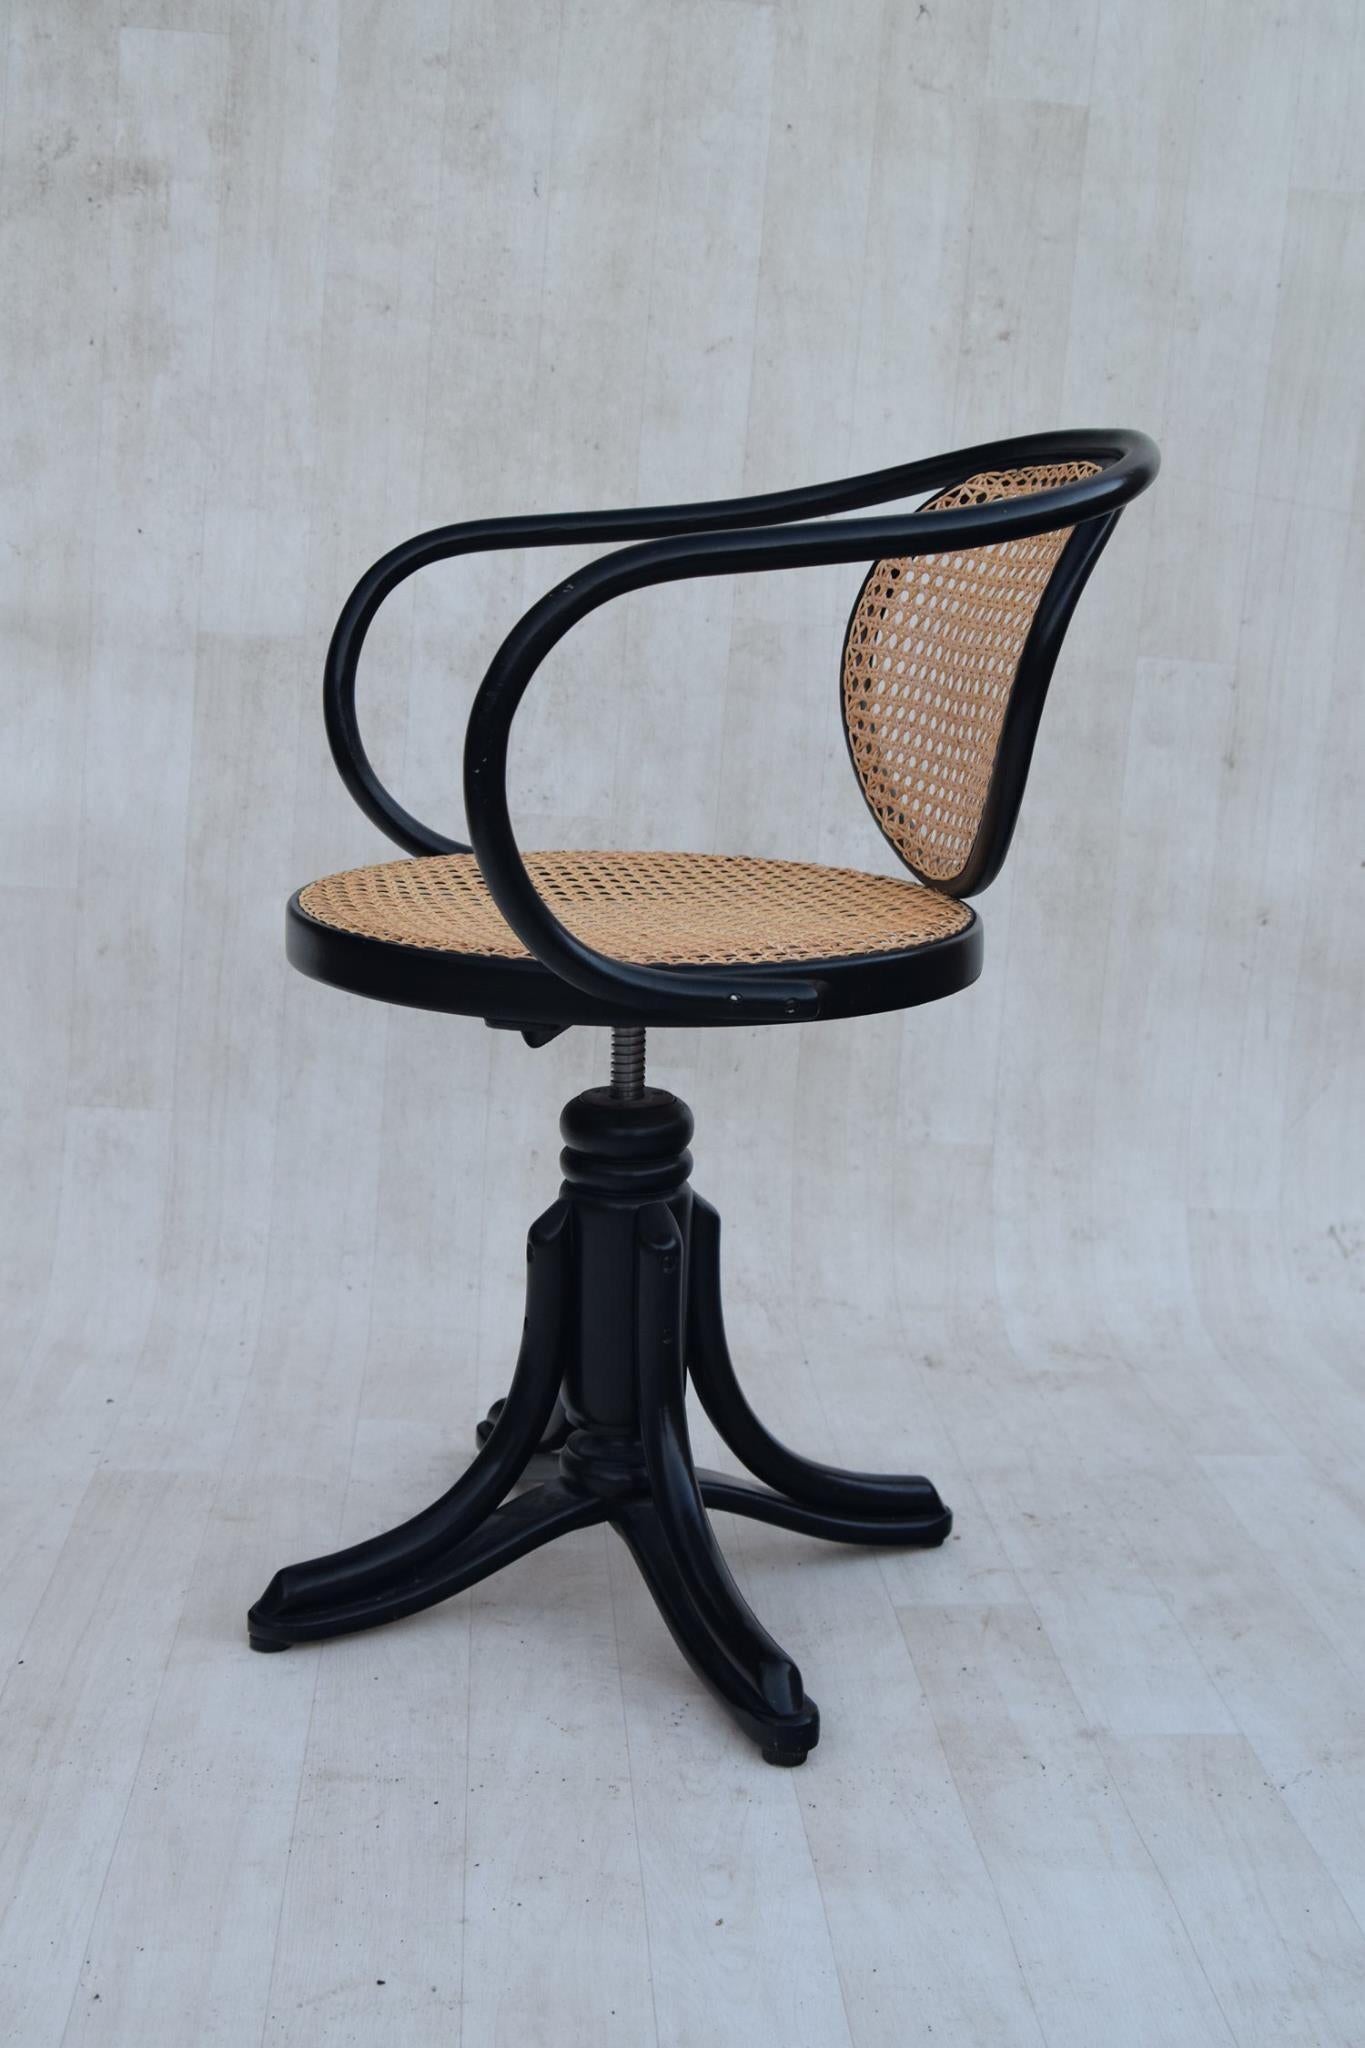 Thonet Schreibtischdrehstuhl aus Bugholz von ZPM Radomsko in schwarzem Lack und Rattangeflecht, hergestellt in Polen. Dieser schöne Stuhl ist in gutem Vintage-Zustand, mit Abnutzung an allen richtigen Stellen. Er ist schwenkbar und höhenverstellbar.